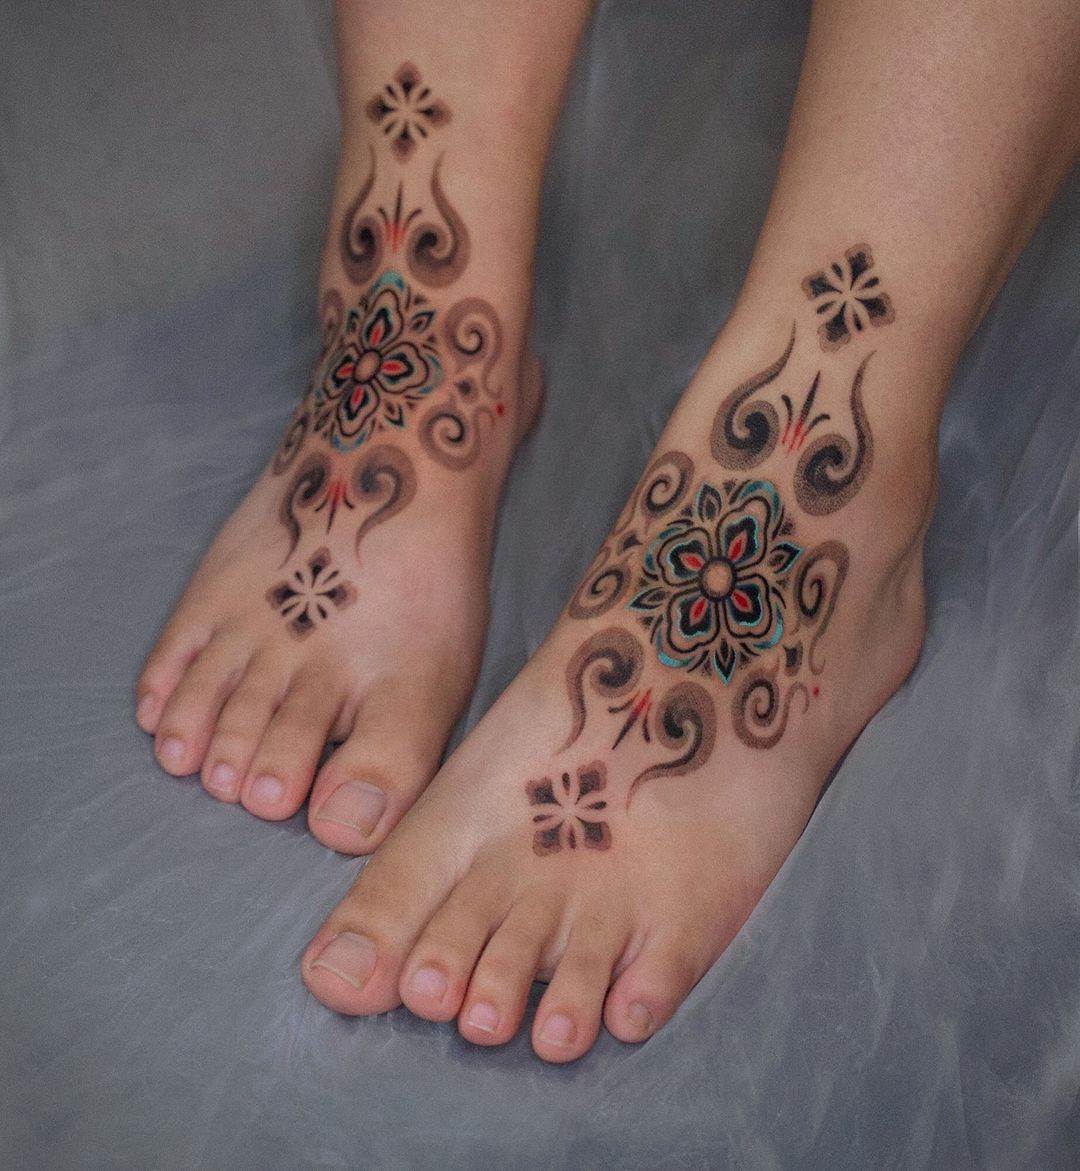 Cute feet tattoo by kiwa jip